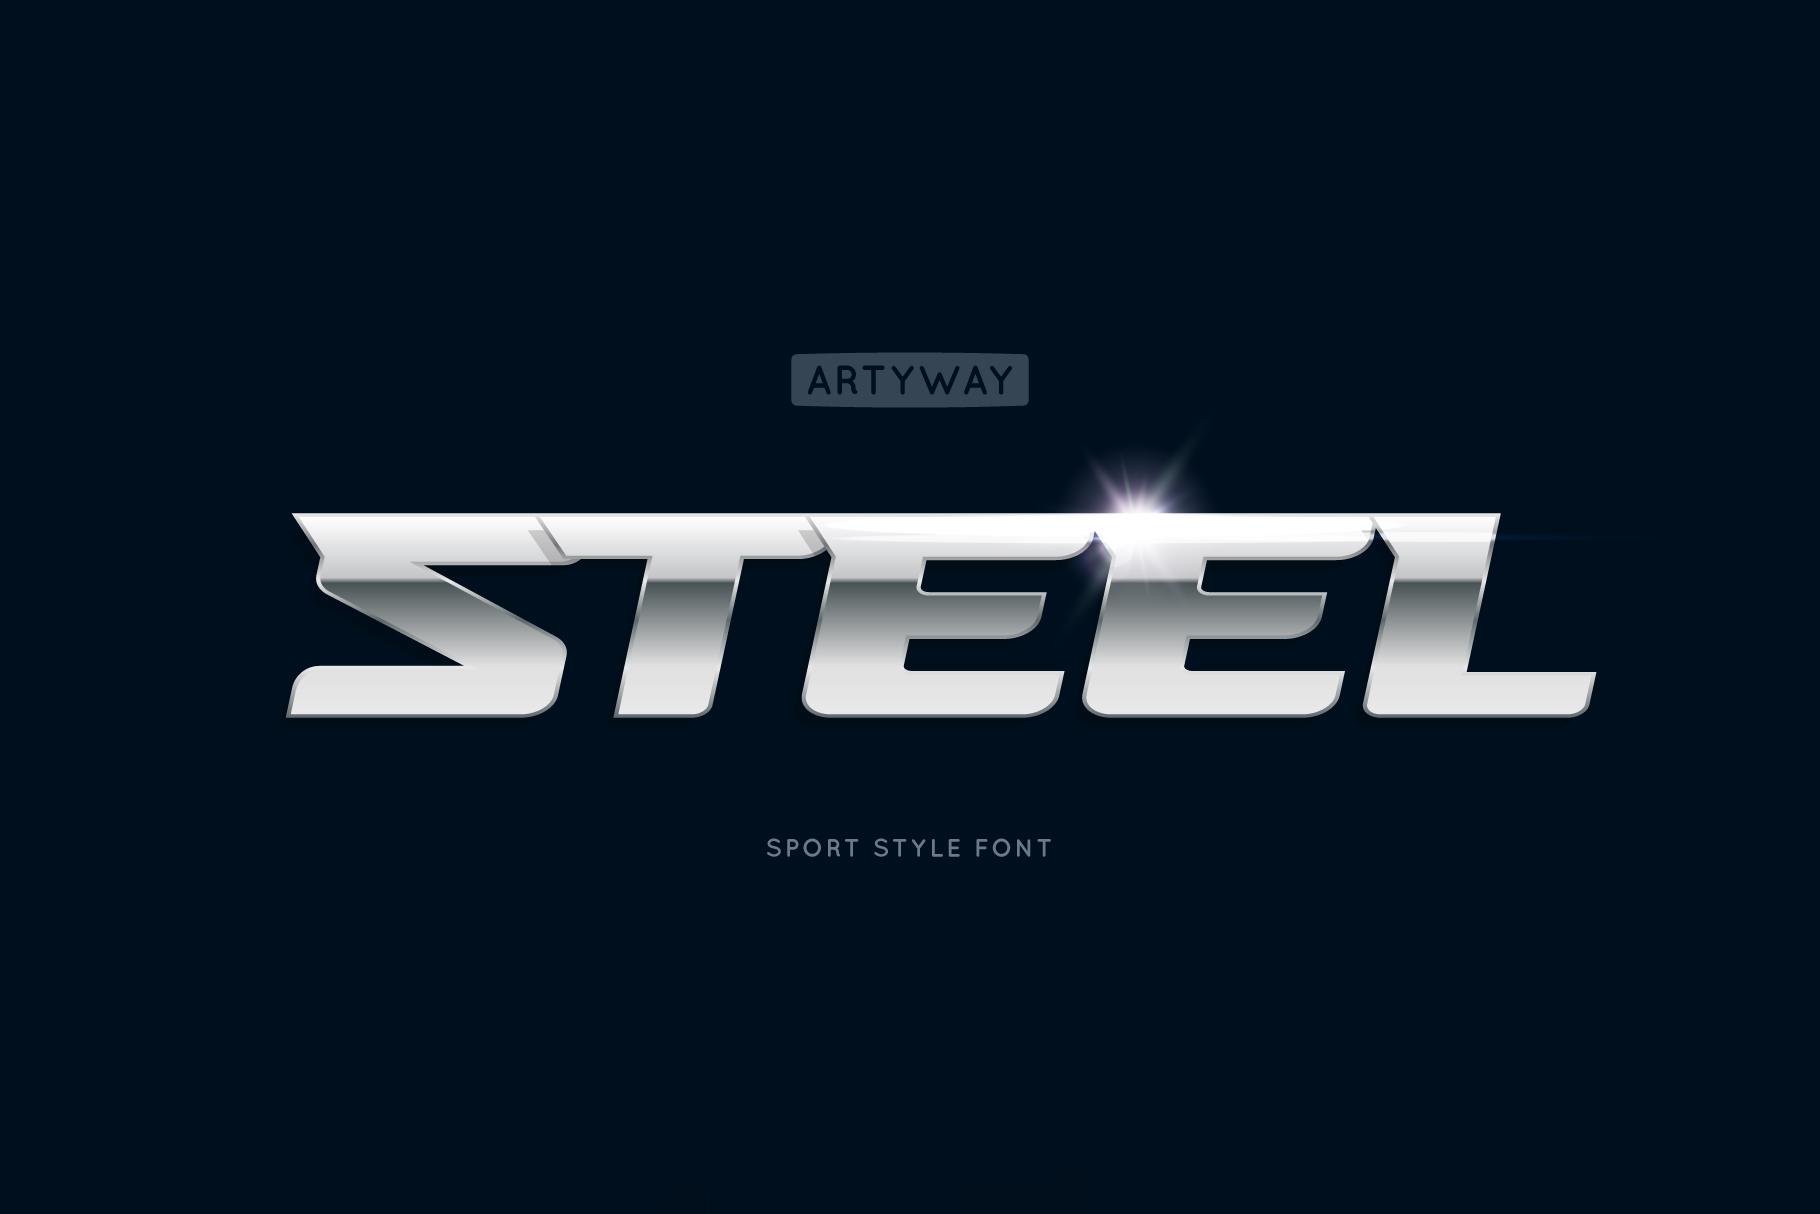 Steel Font